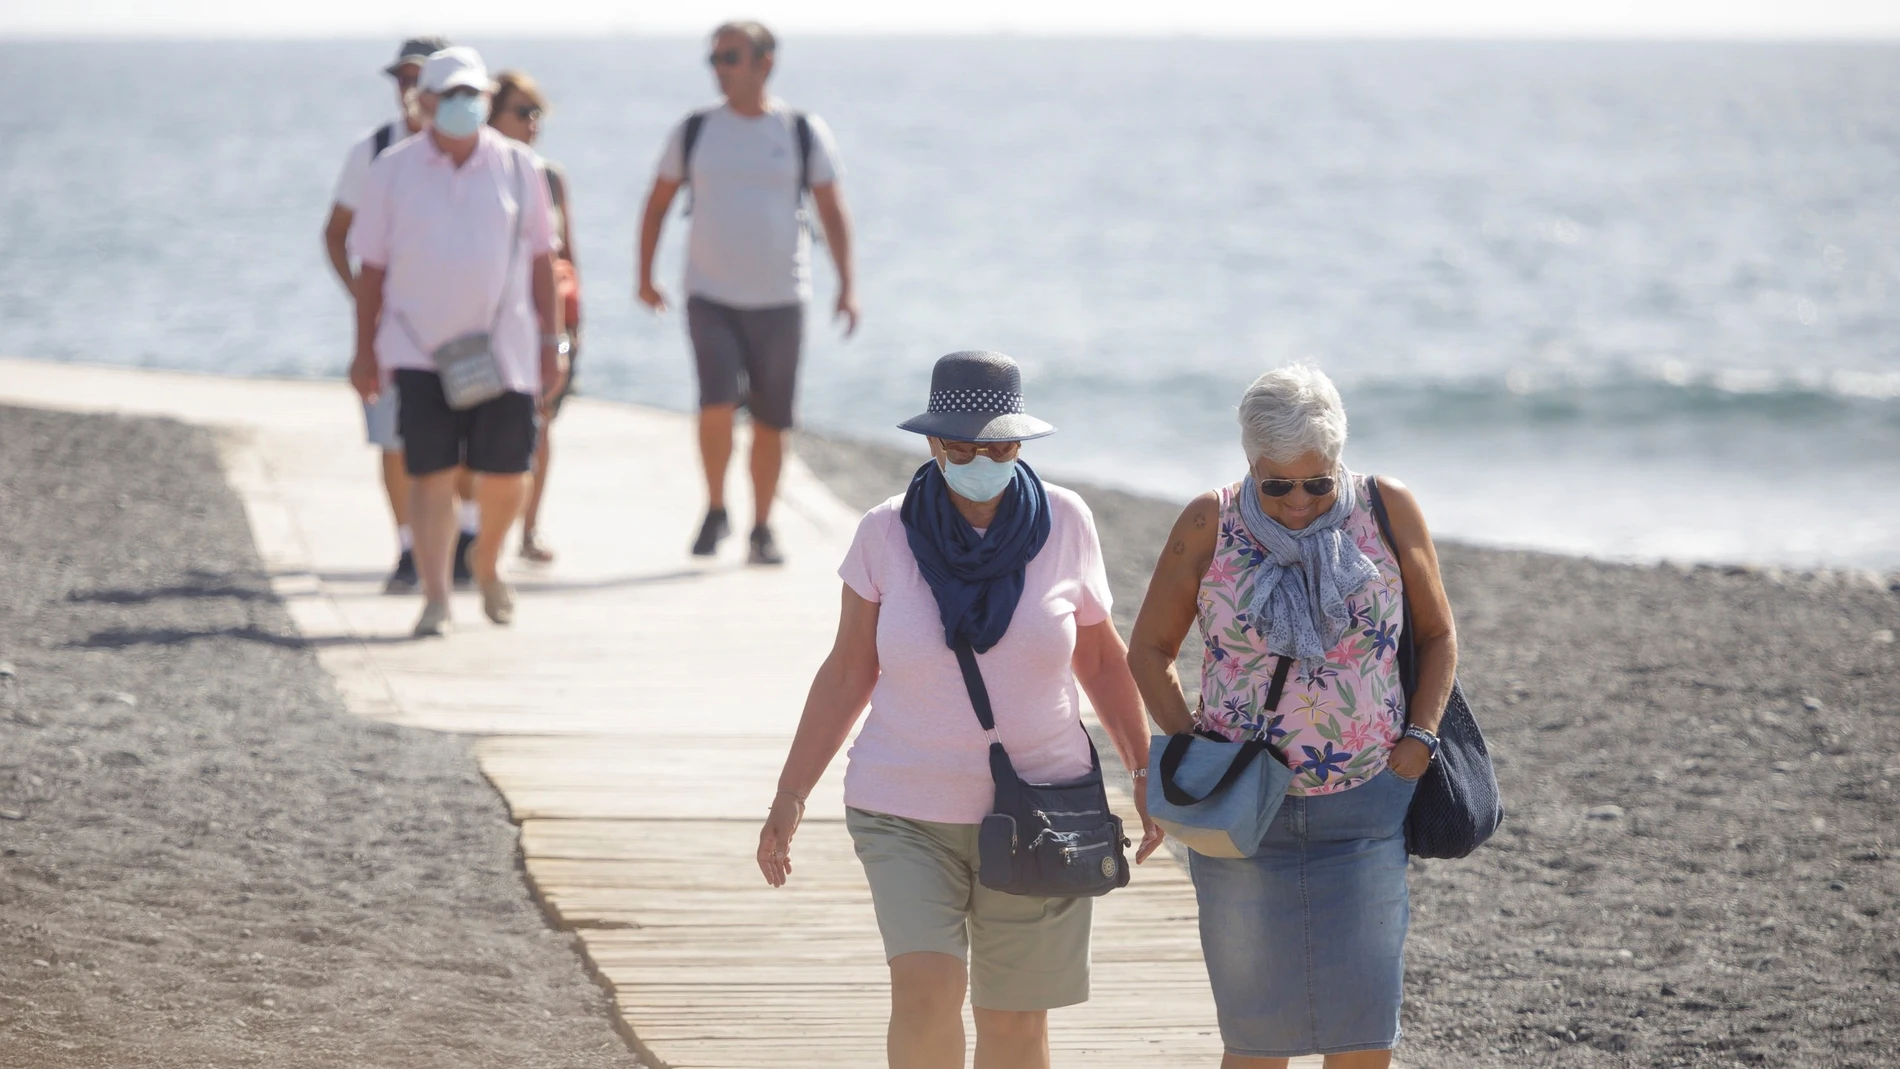 La situación en Canarias "pinta bien" porque no hay contagio comunitario